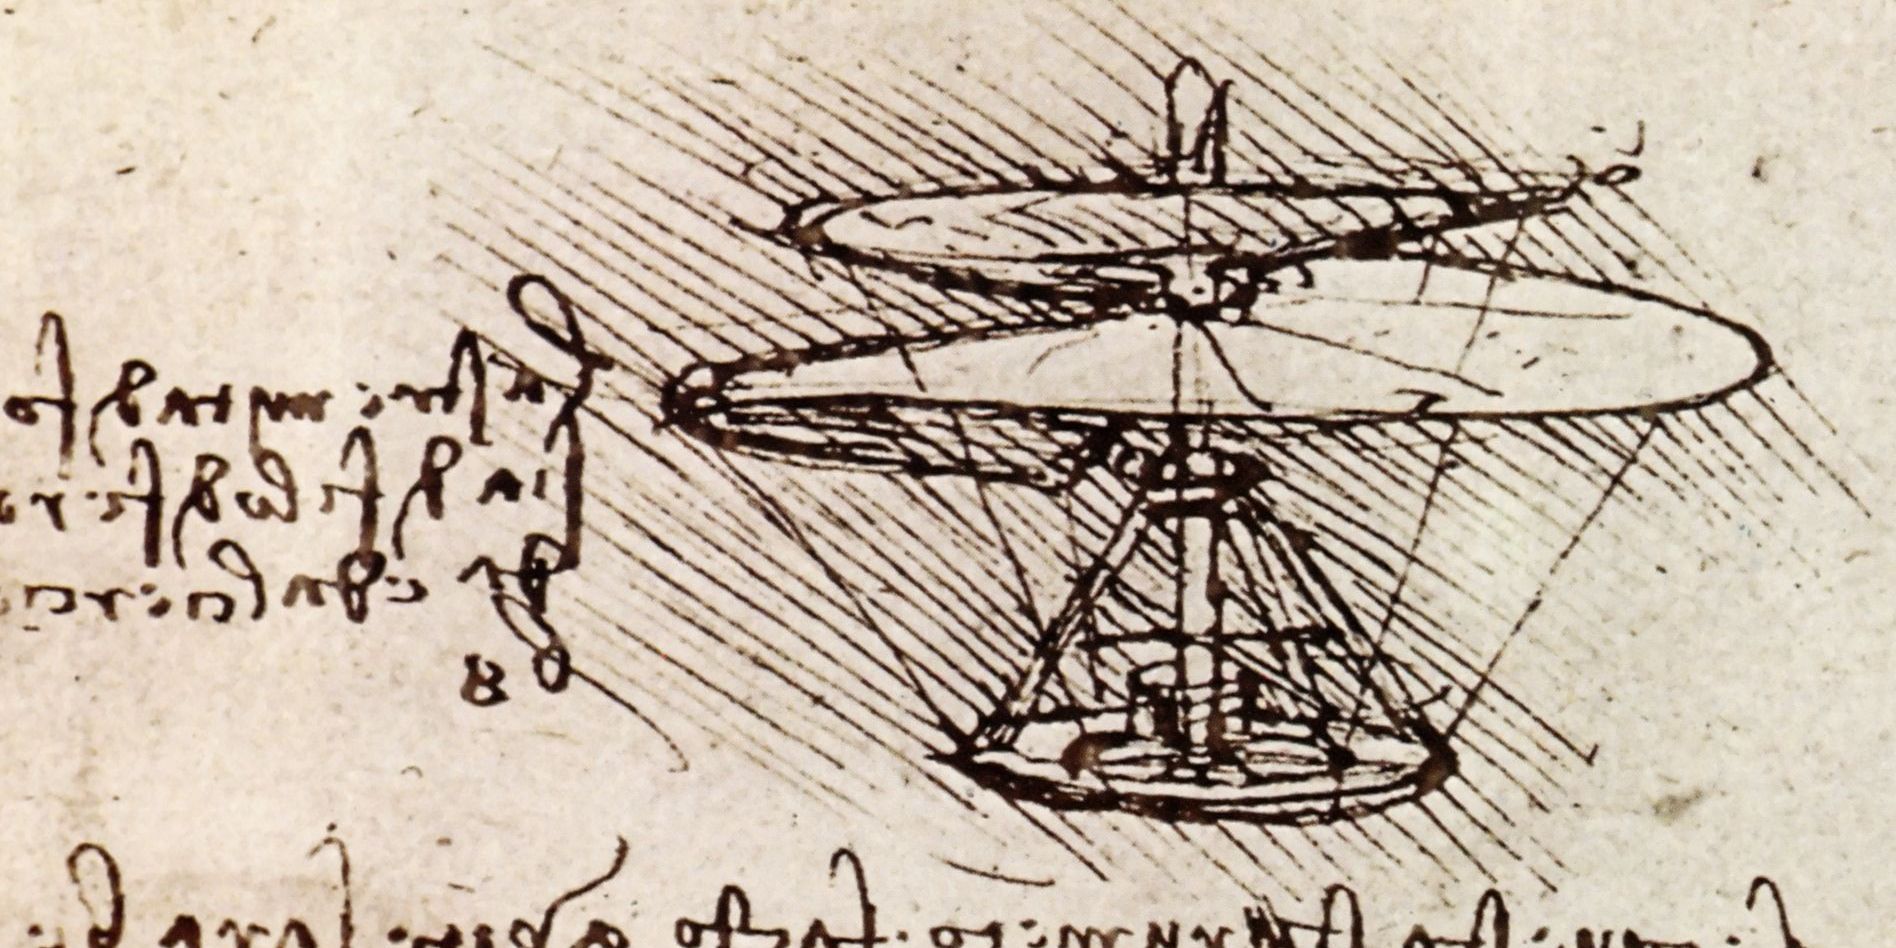 6 удивительных изобретений Леонардо да Винчи, которые опередили своё время - Лайфхакер